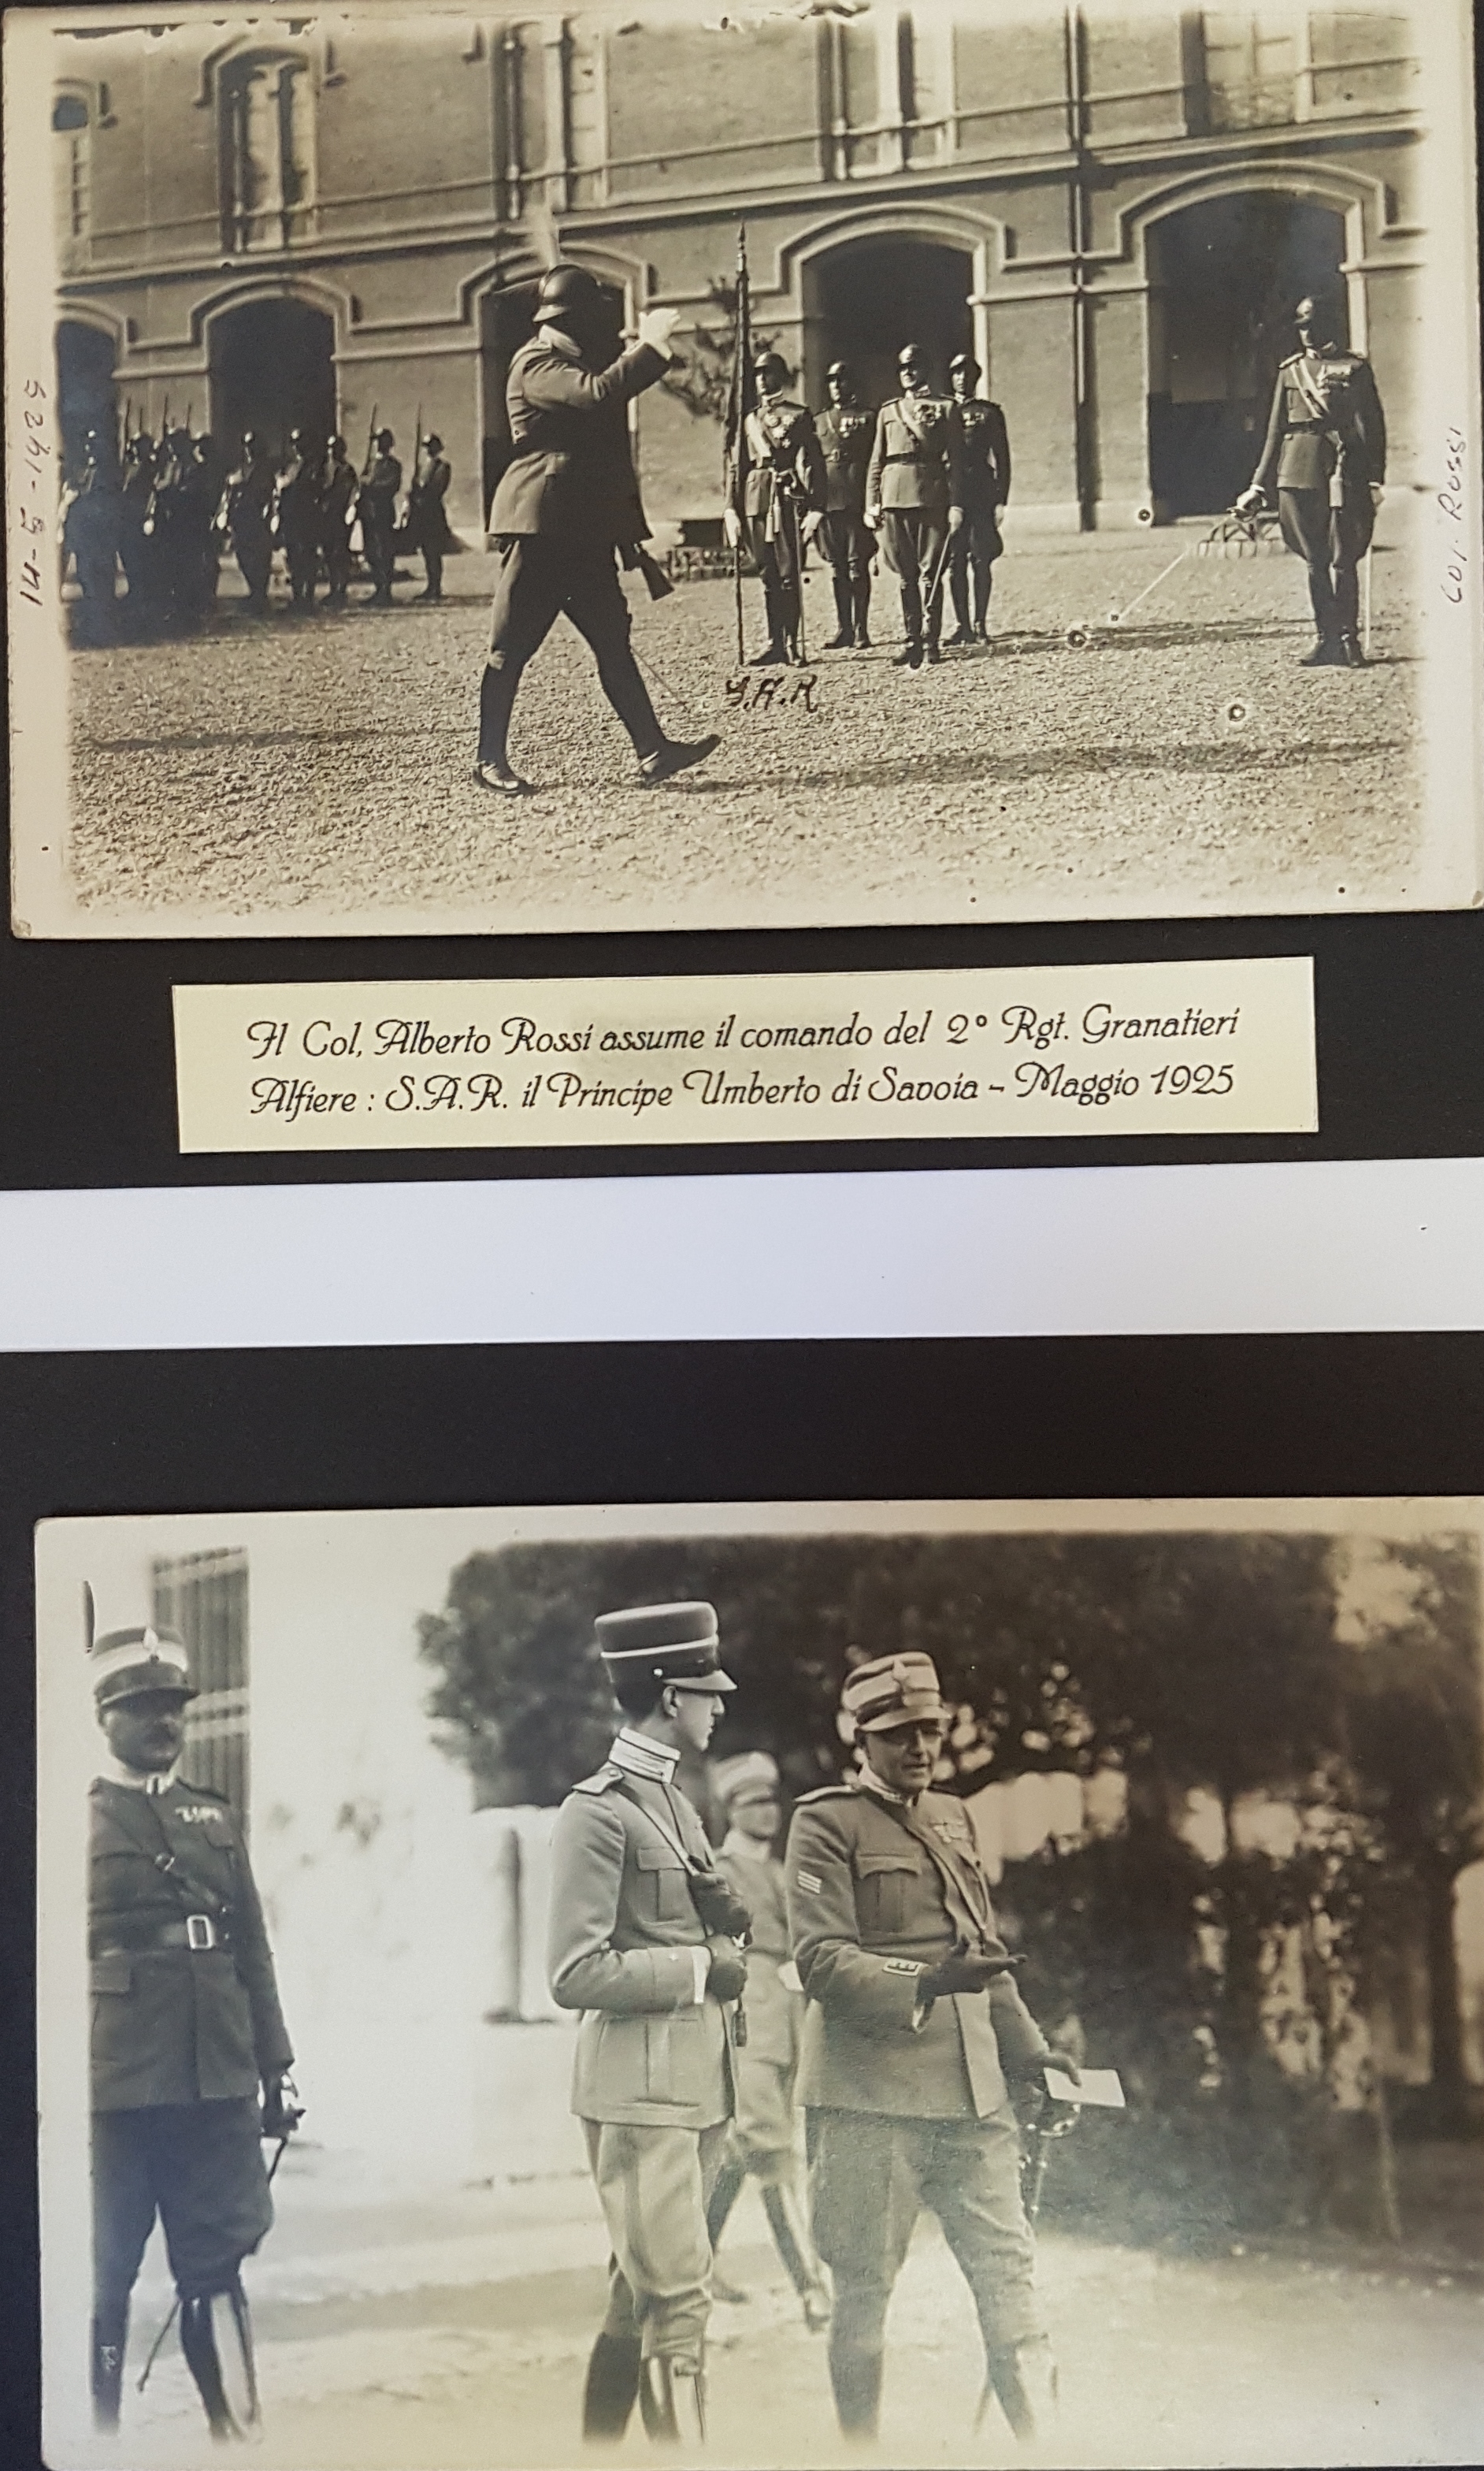 Maggio 1925 assunzione comando 2° rgt - Col Alberto Rossi